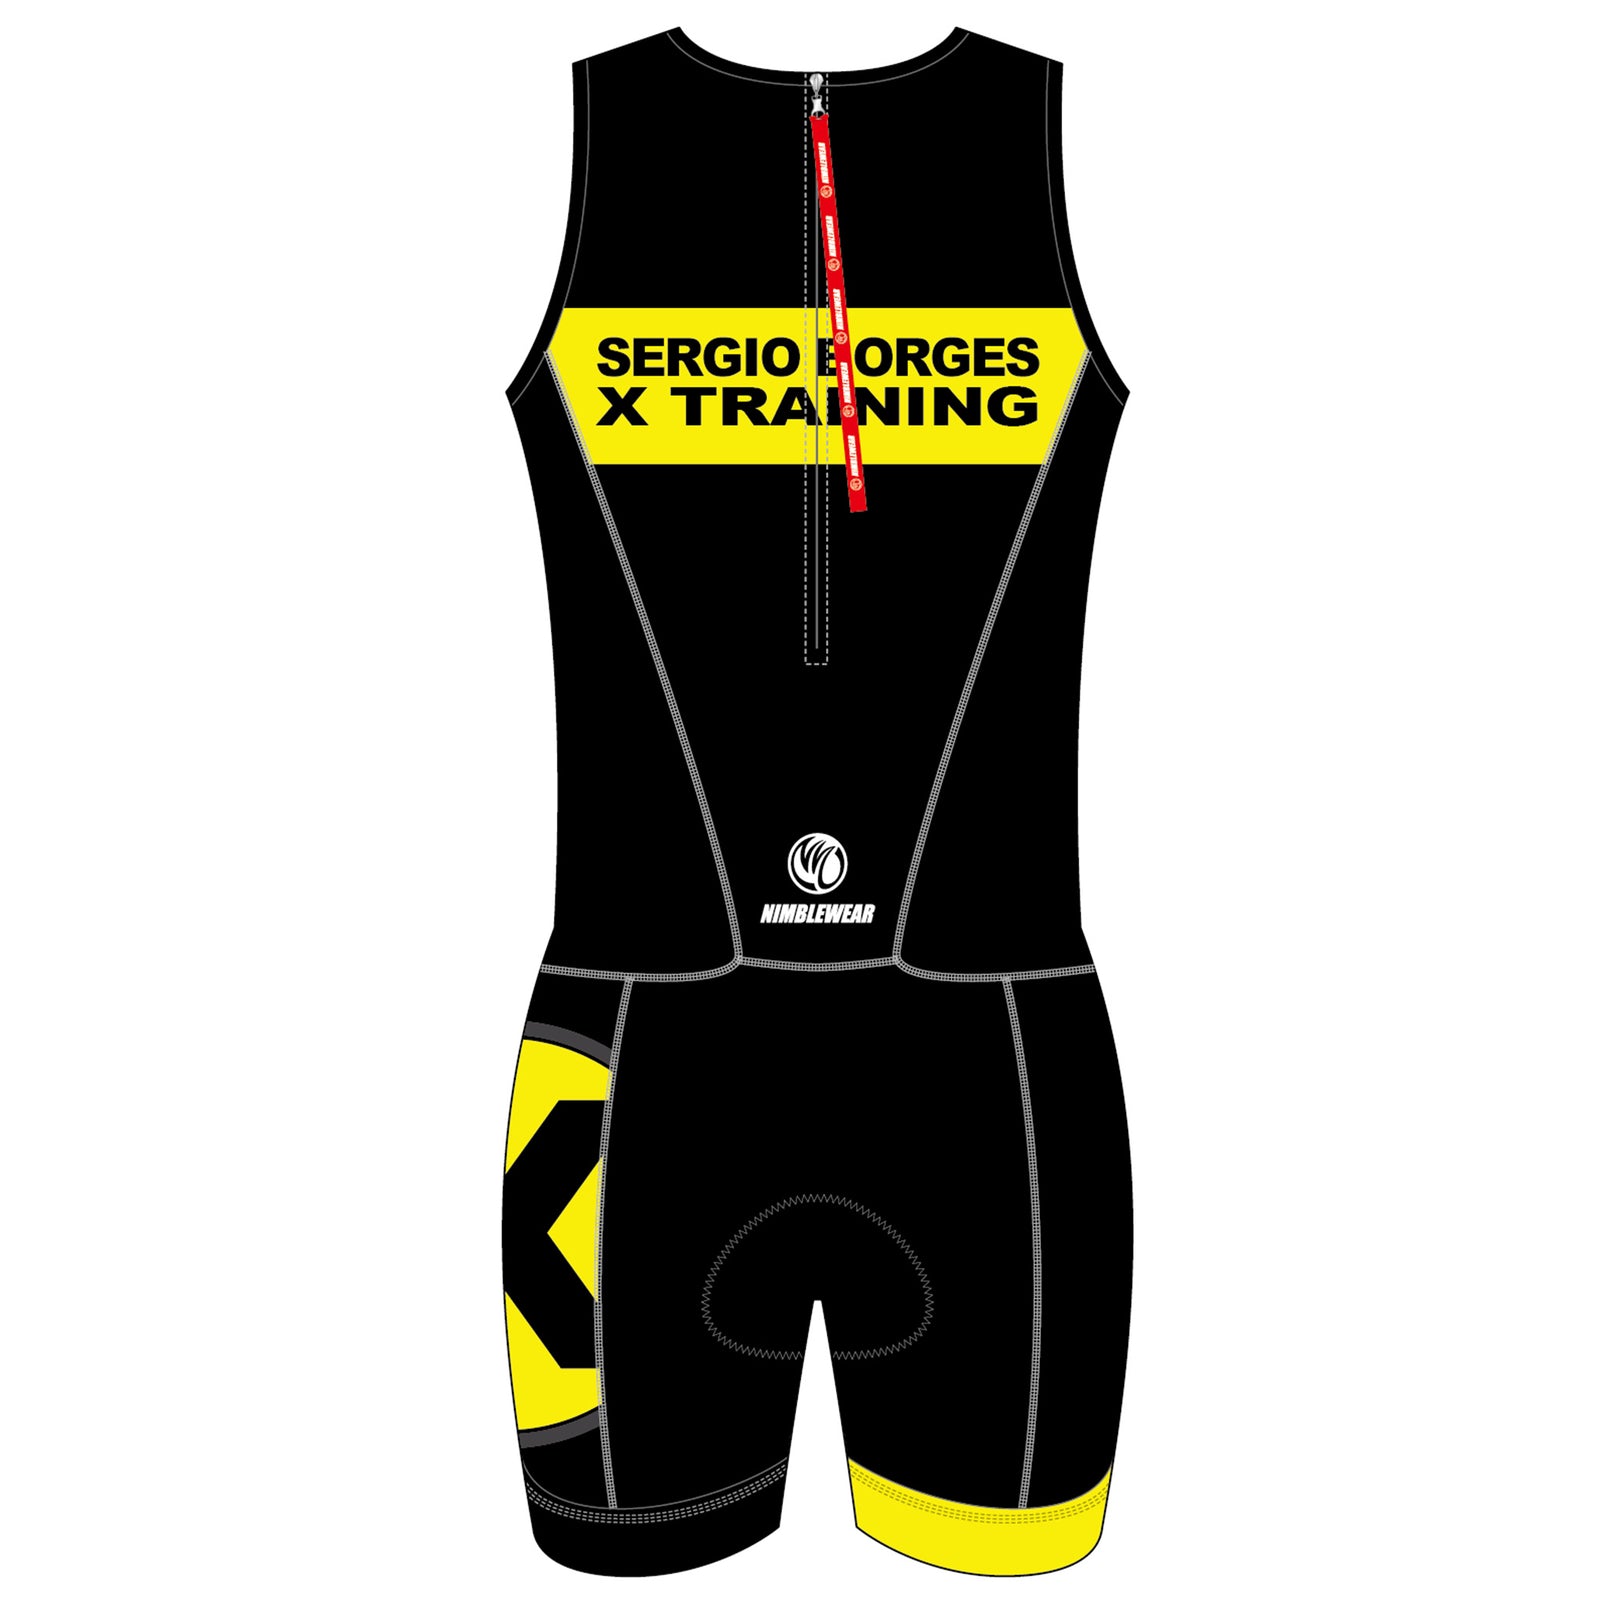 Sergio BRONZE MEN ITU Triathlon Suit